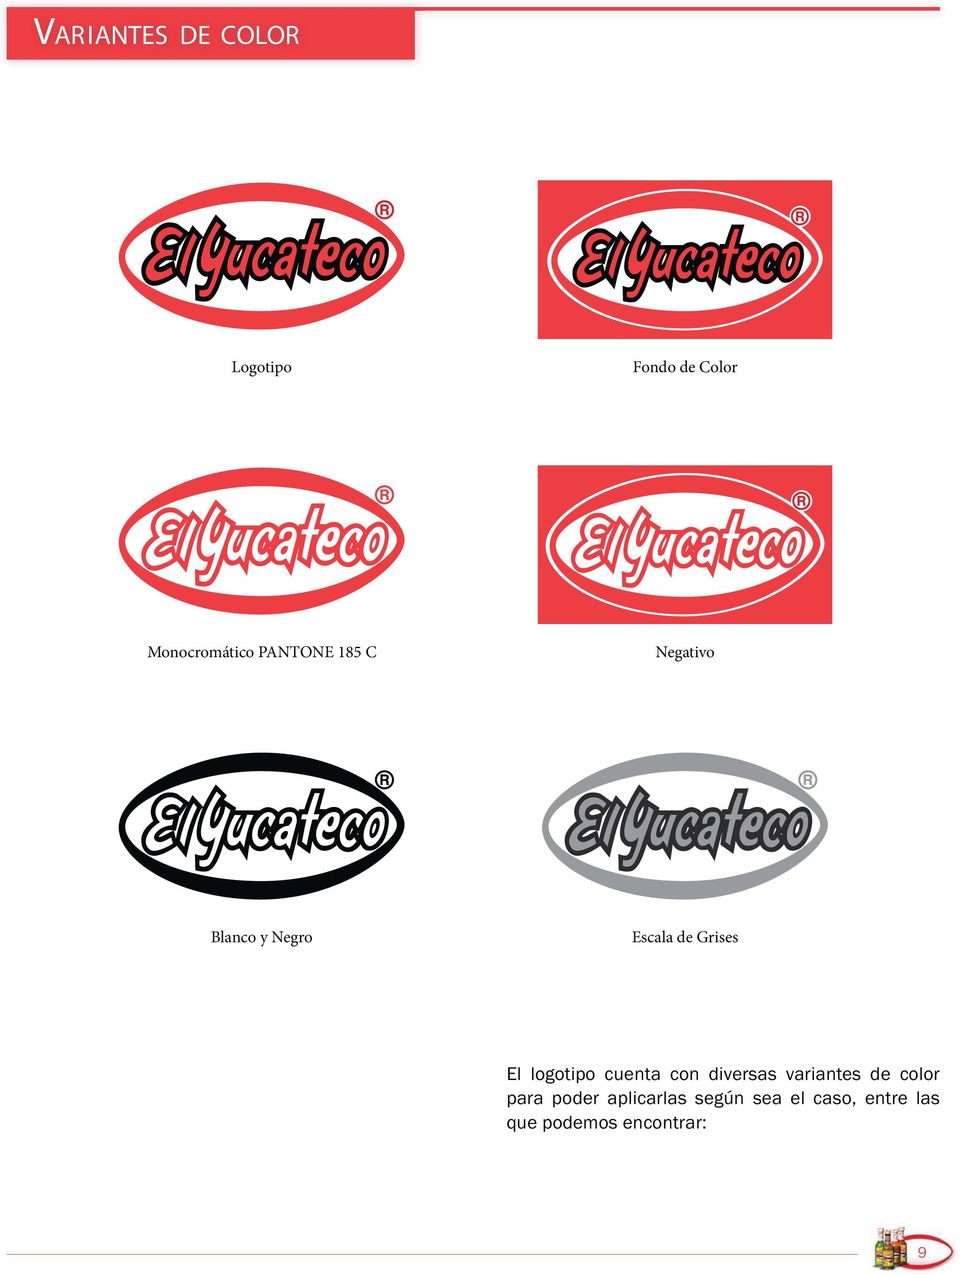 logotipo cuenta con diversas variantes de color para poder